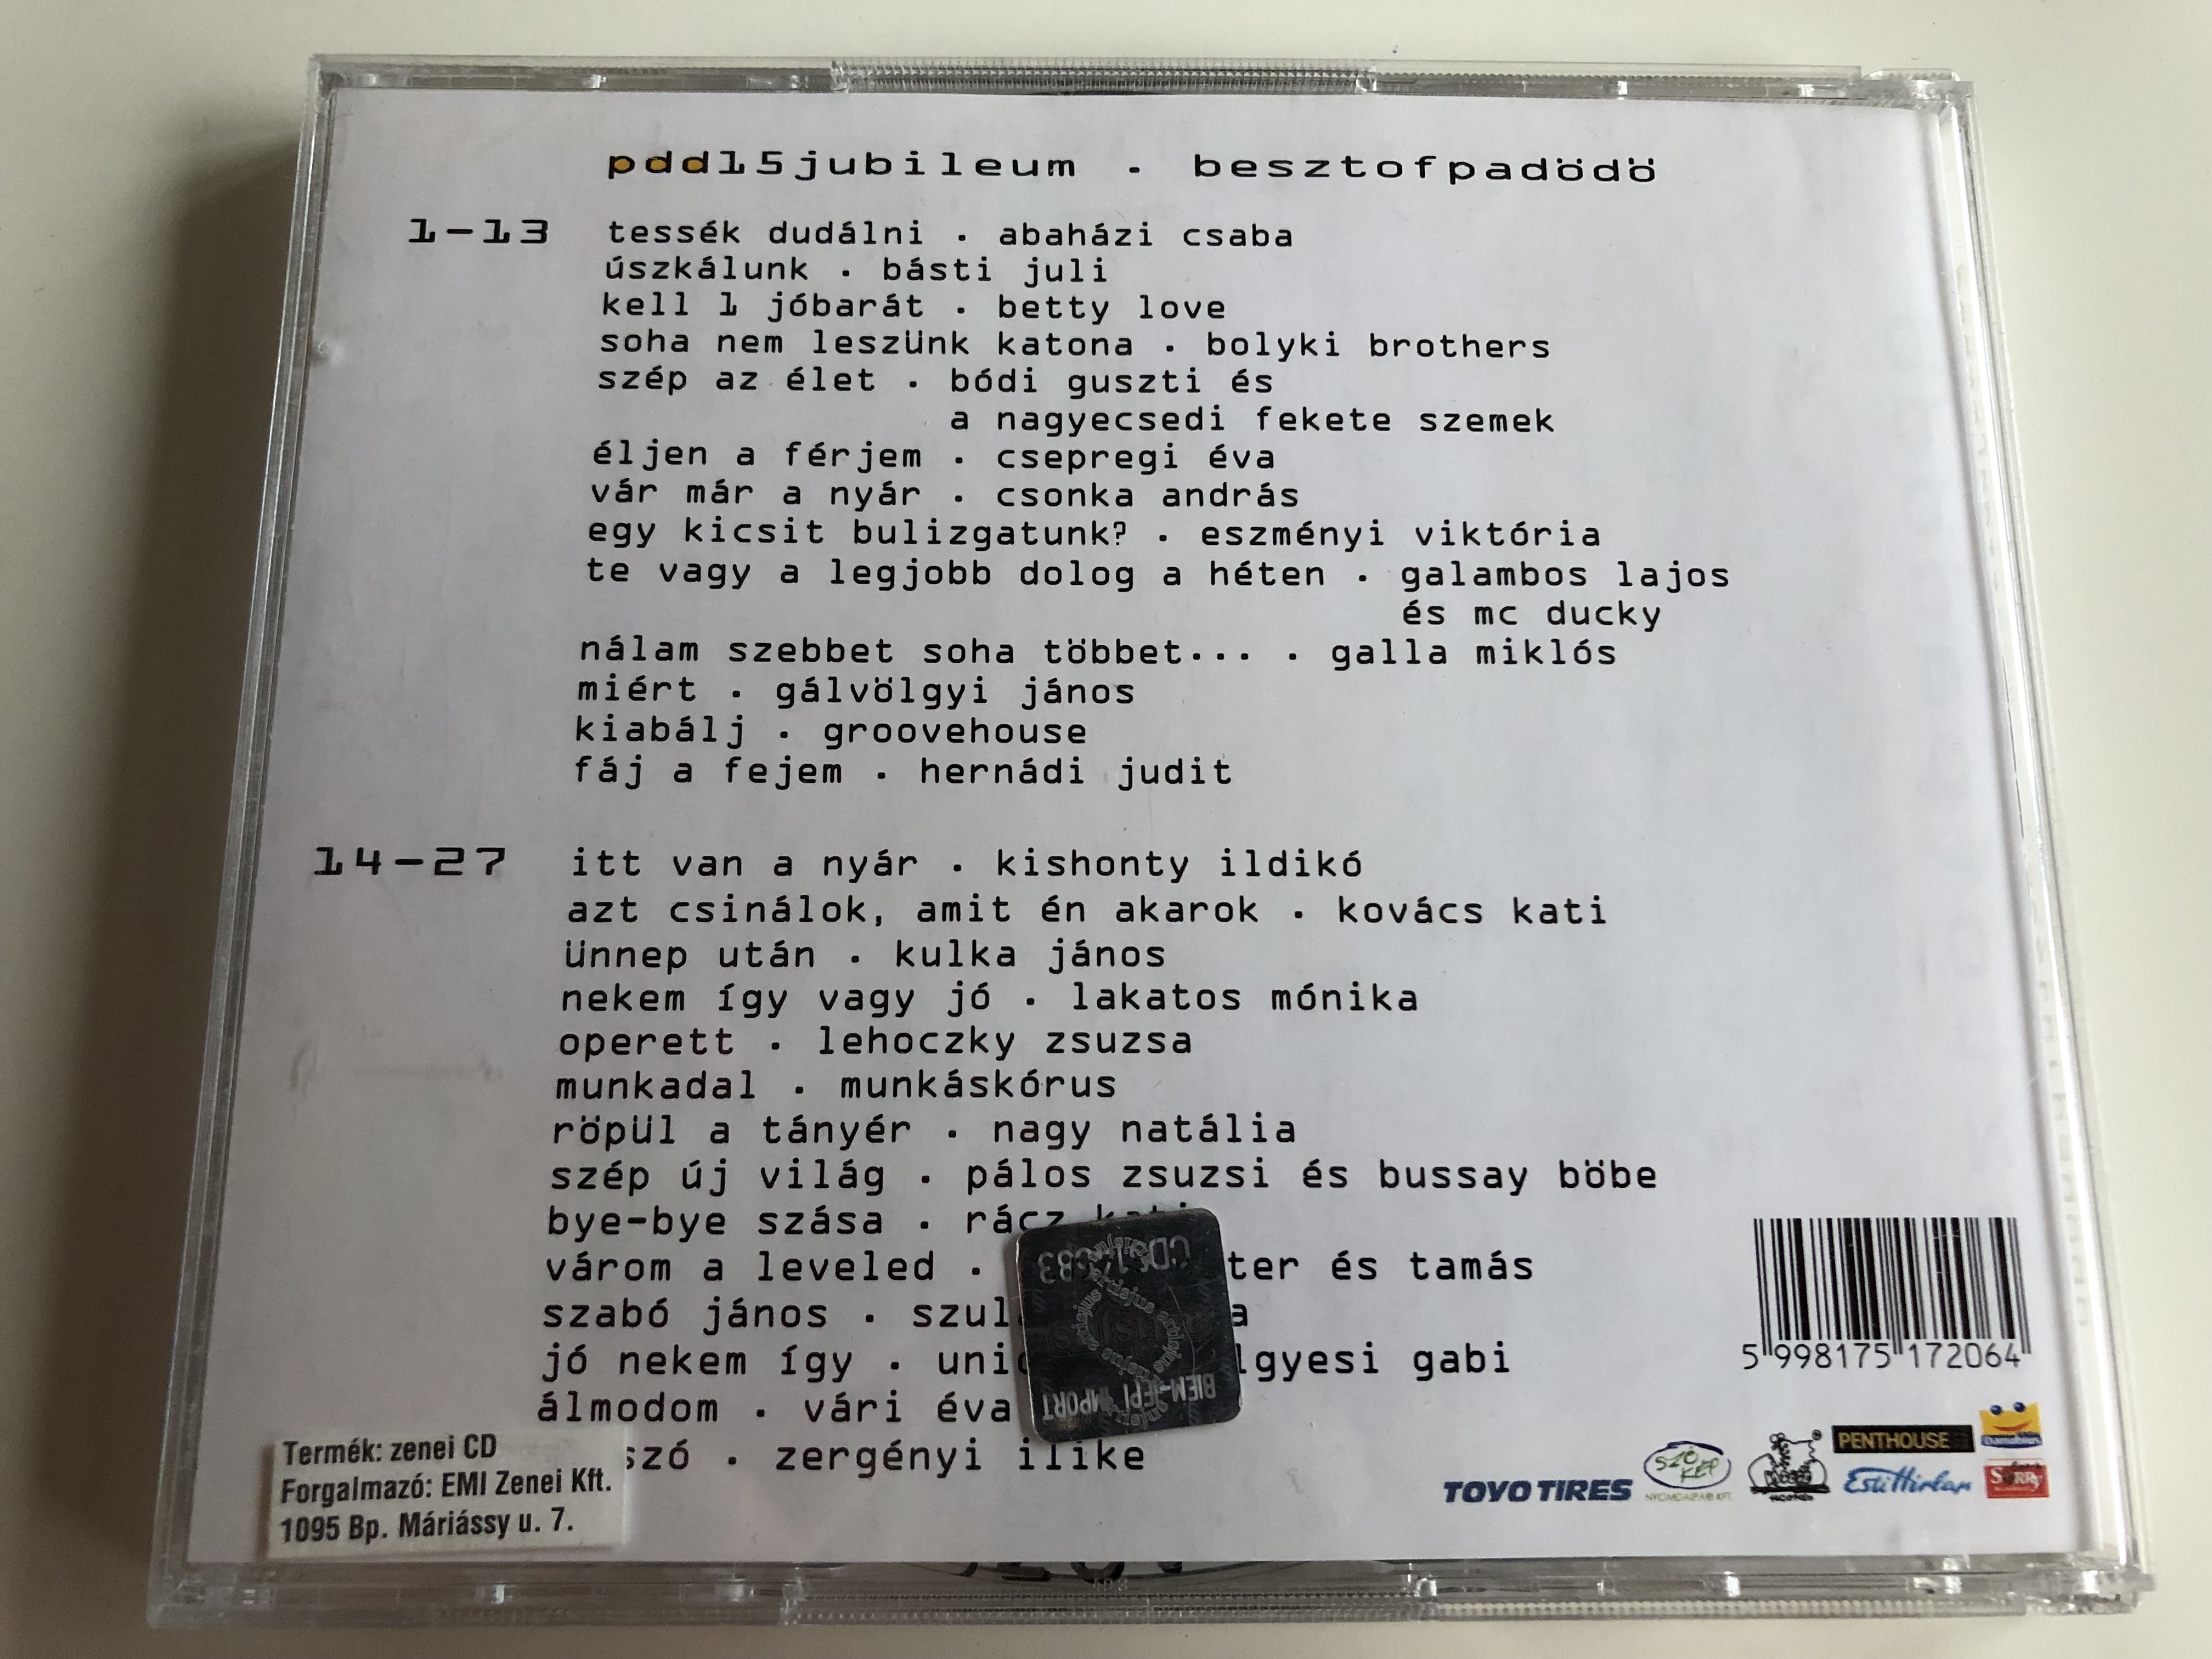 pa-d-d-pdd-15-jubileum-14-27-audio-cd-2003-besztofpad-d-best-of-pa-d-d-8-.jpg